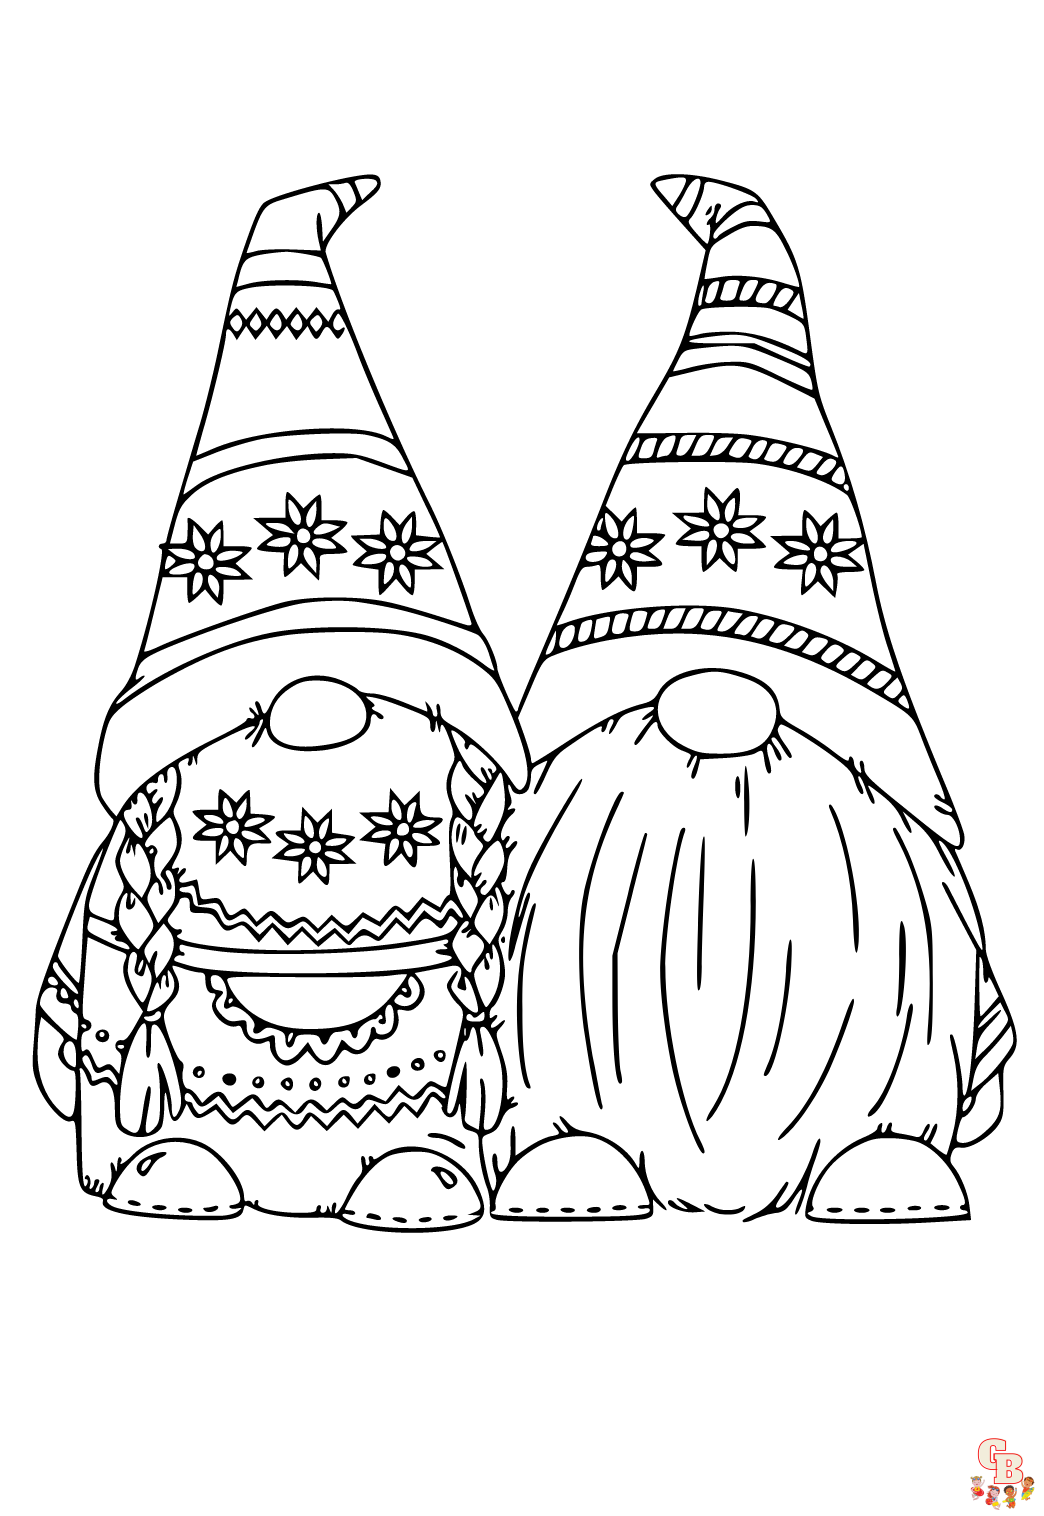 ostern gnome ausmalbilder zum ausdrucken 1